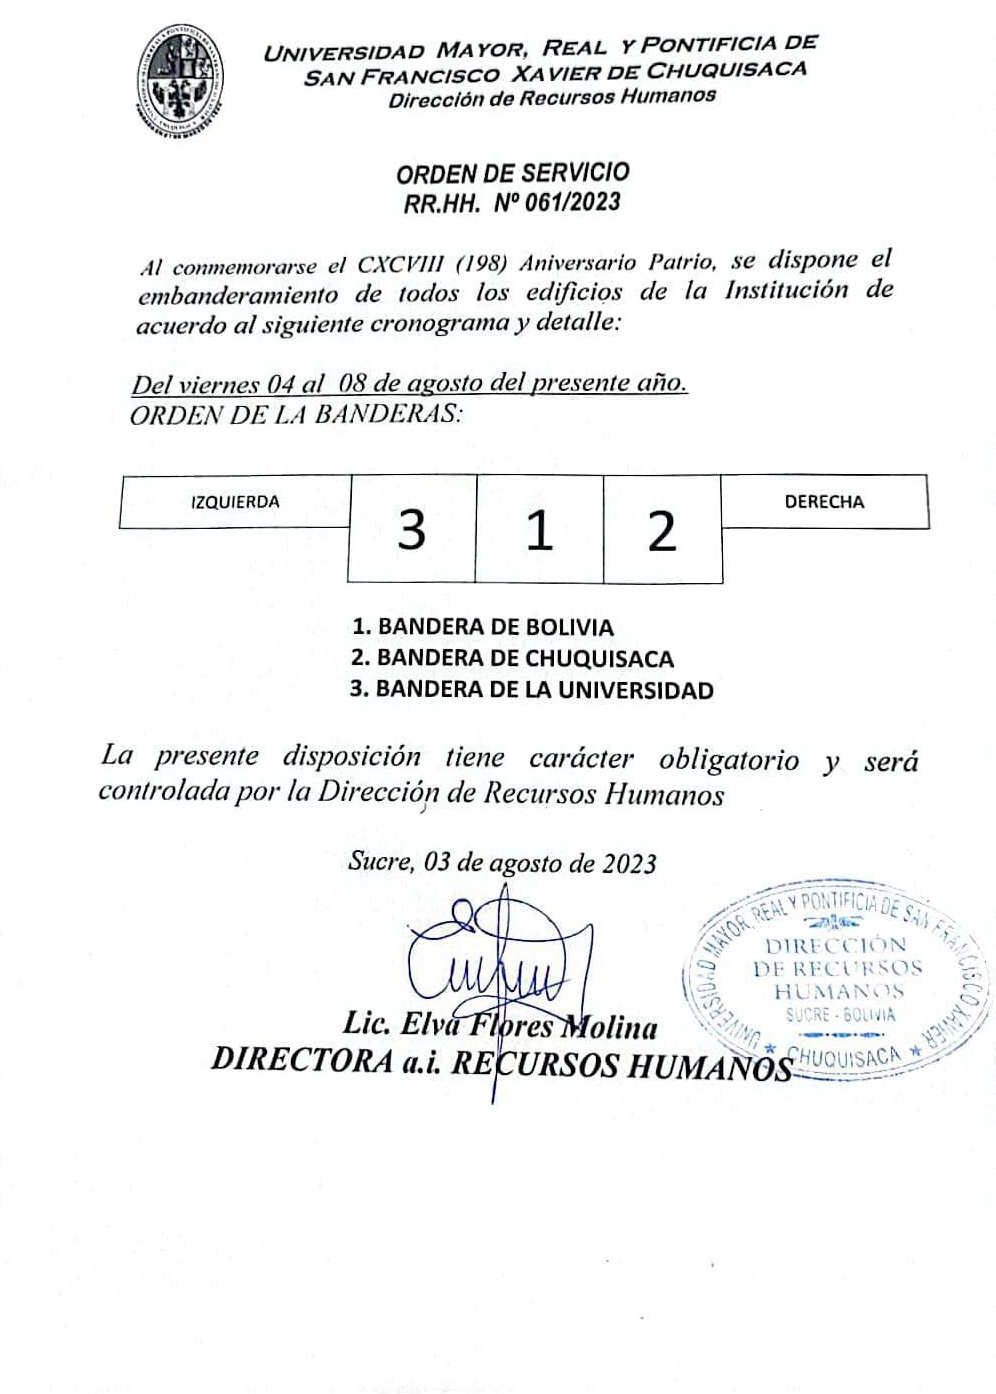 ORDEN DE SERVICIO RR.HH. Nº 061/2023, EMBANDERAMIENTO DE EDIFICIOS UNIVERSITARIOS.